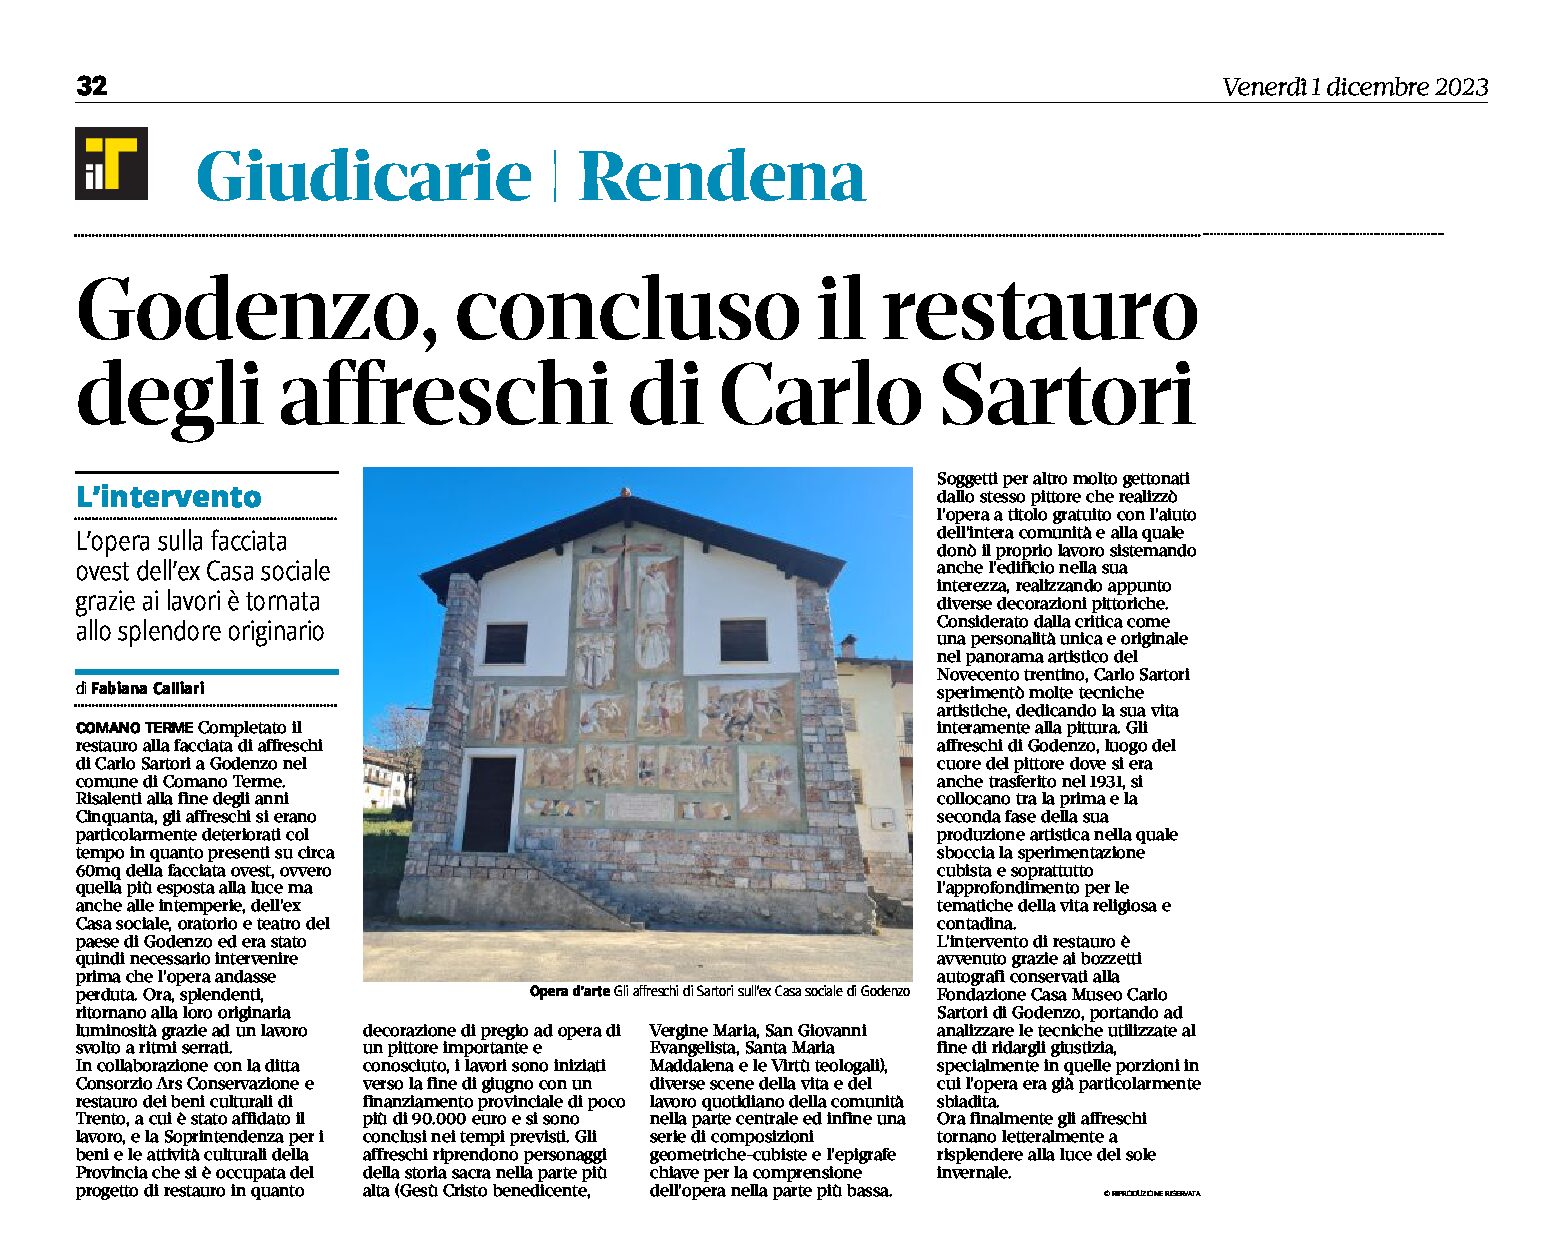 Godenzo: concluso il restauro degli affreschi di Carlo Sartori